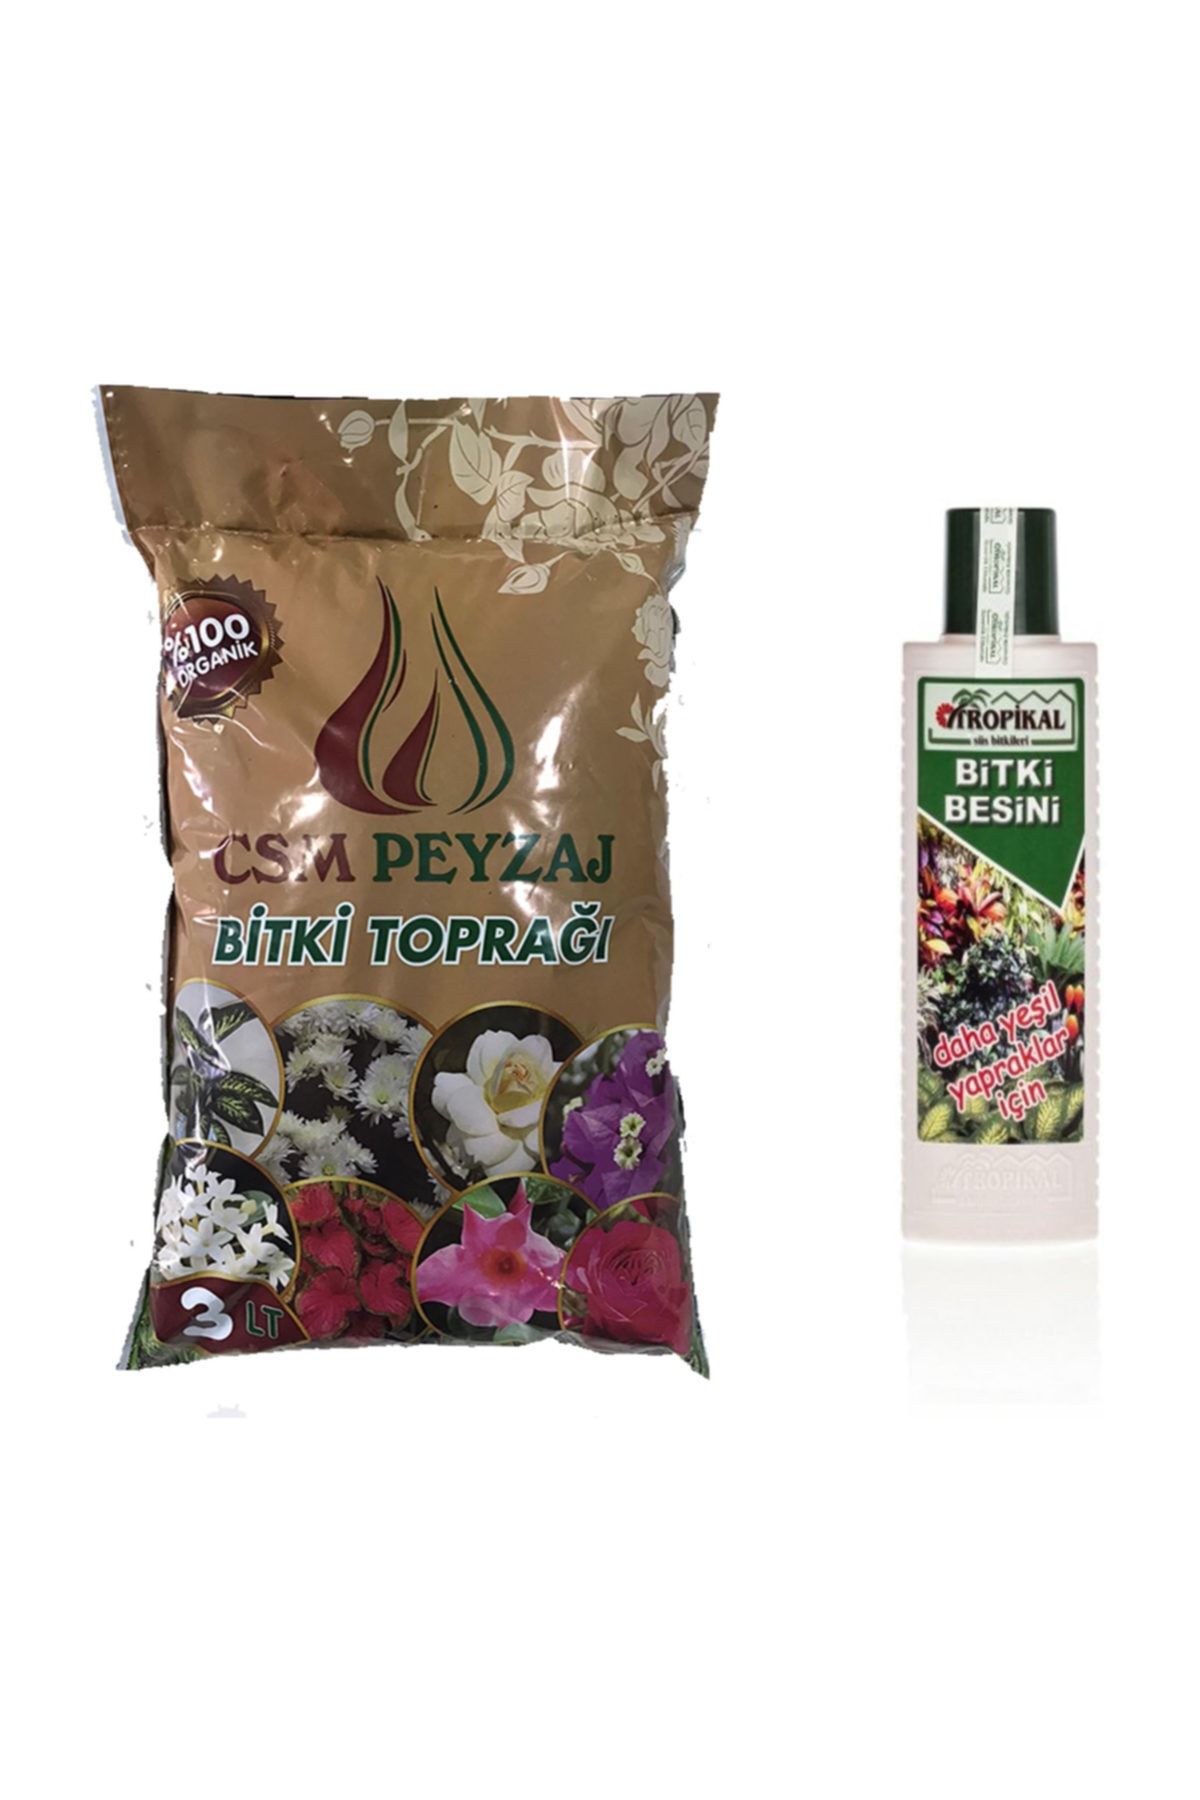 CSM PEYSAJ Sinek Yapmayan Çiçek Toprağı (3lt) Yeşil Bitki Vitamini(225ml), Organik Toprak